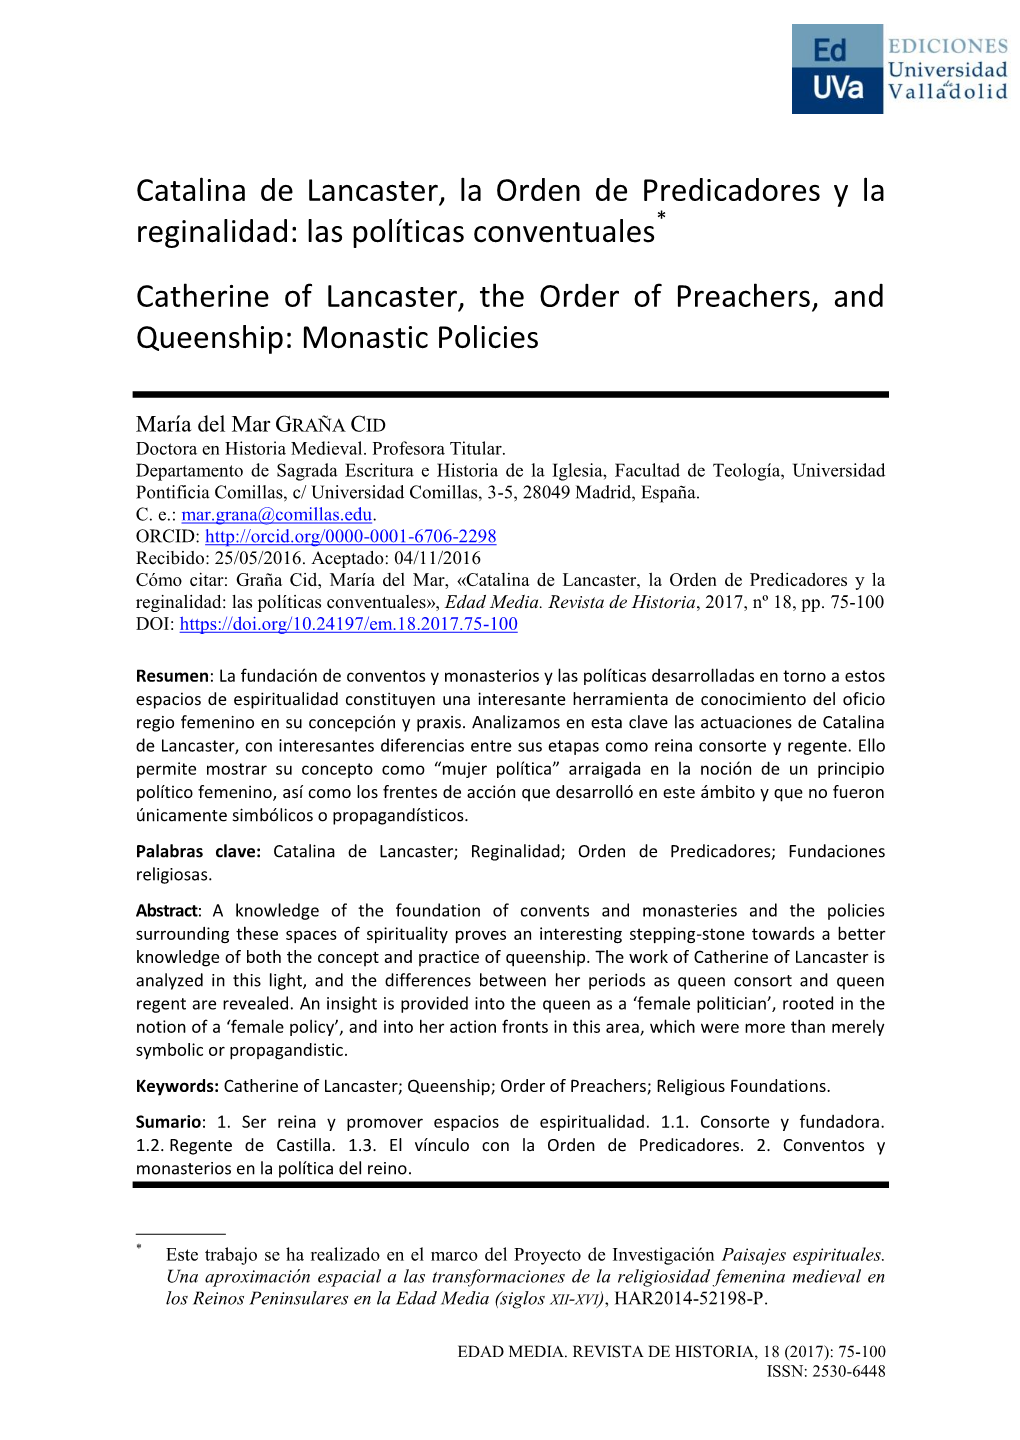 Catalina De Lancaster, La Orden De Predicadores Y La Reginalidad: Las Políticas Conventuales*